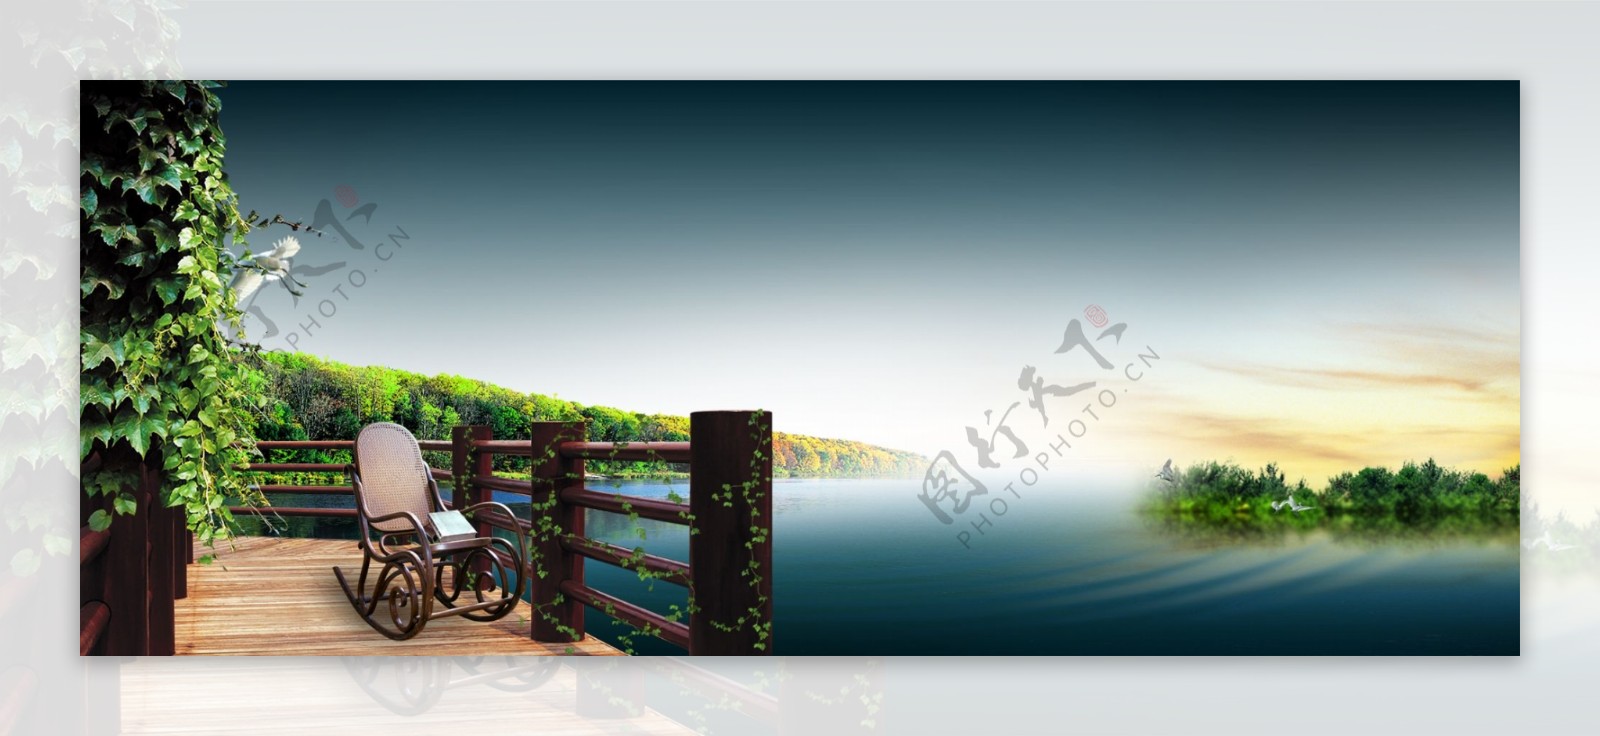 栈桥湖面素材图片